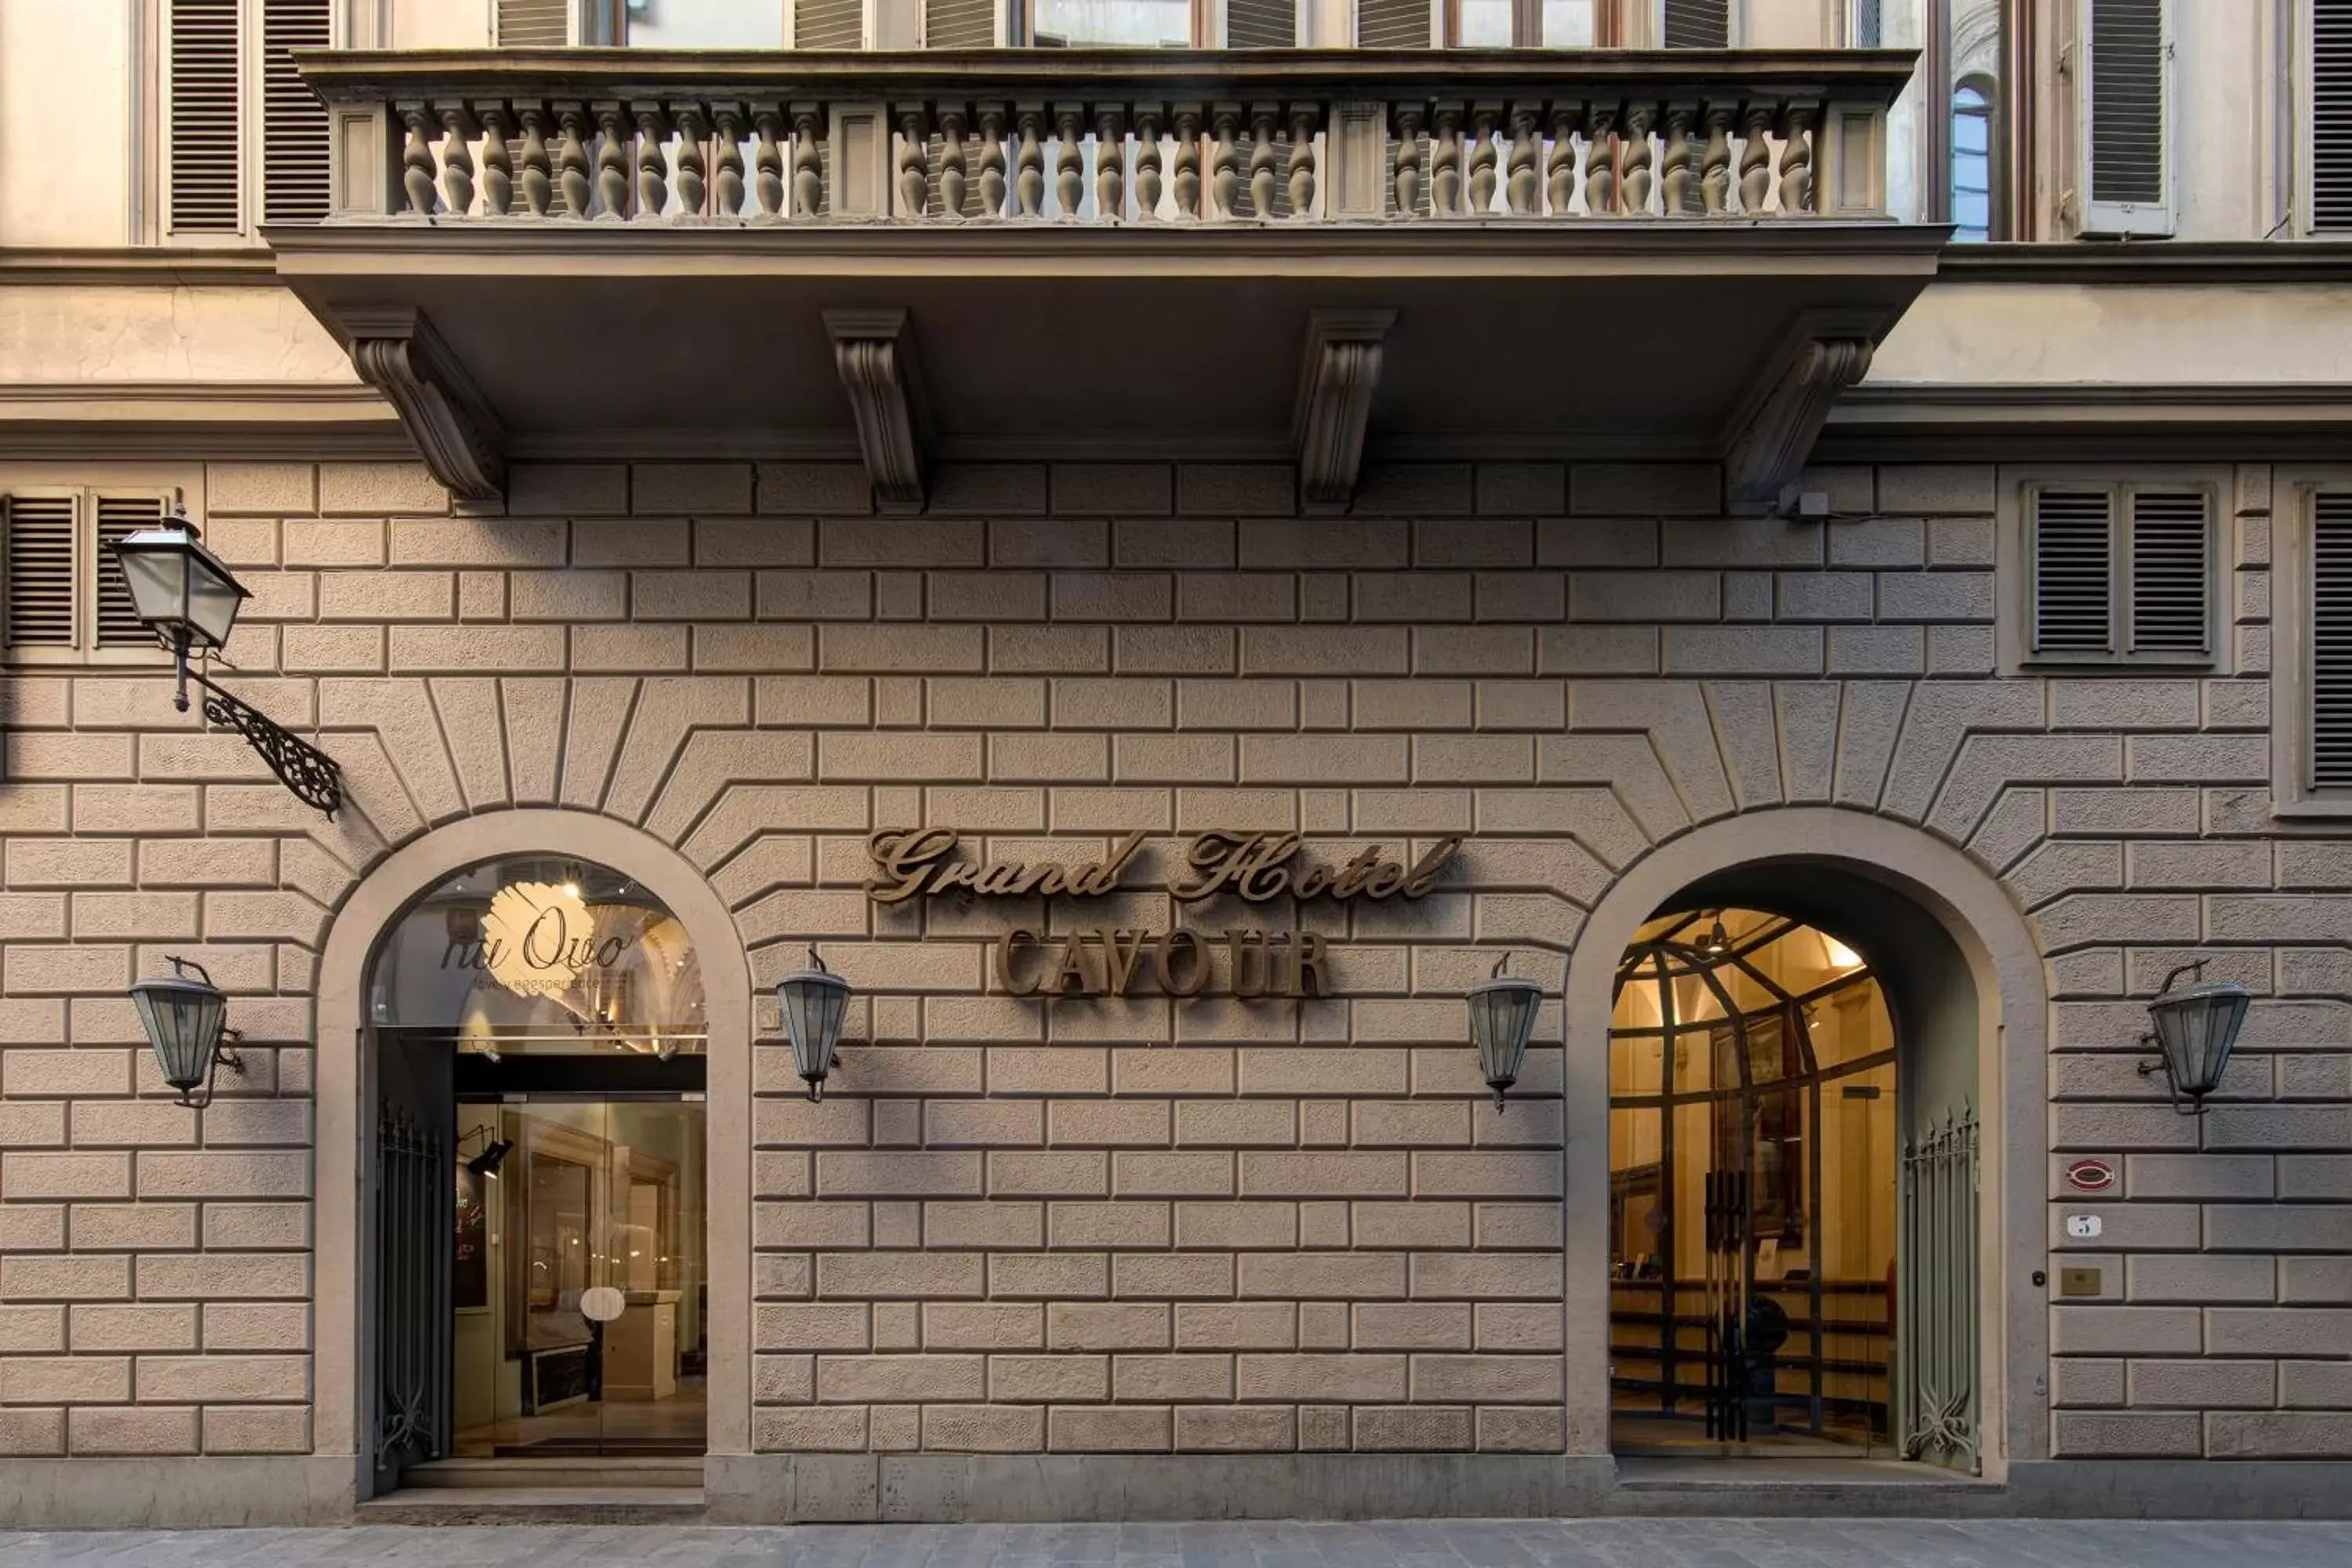 Facade/entrance in Grand Hotel Cavour